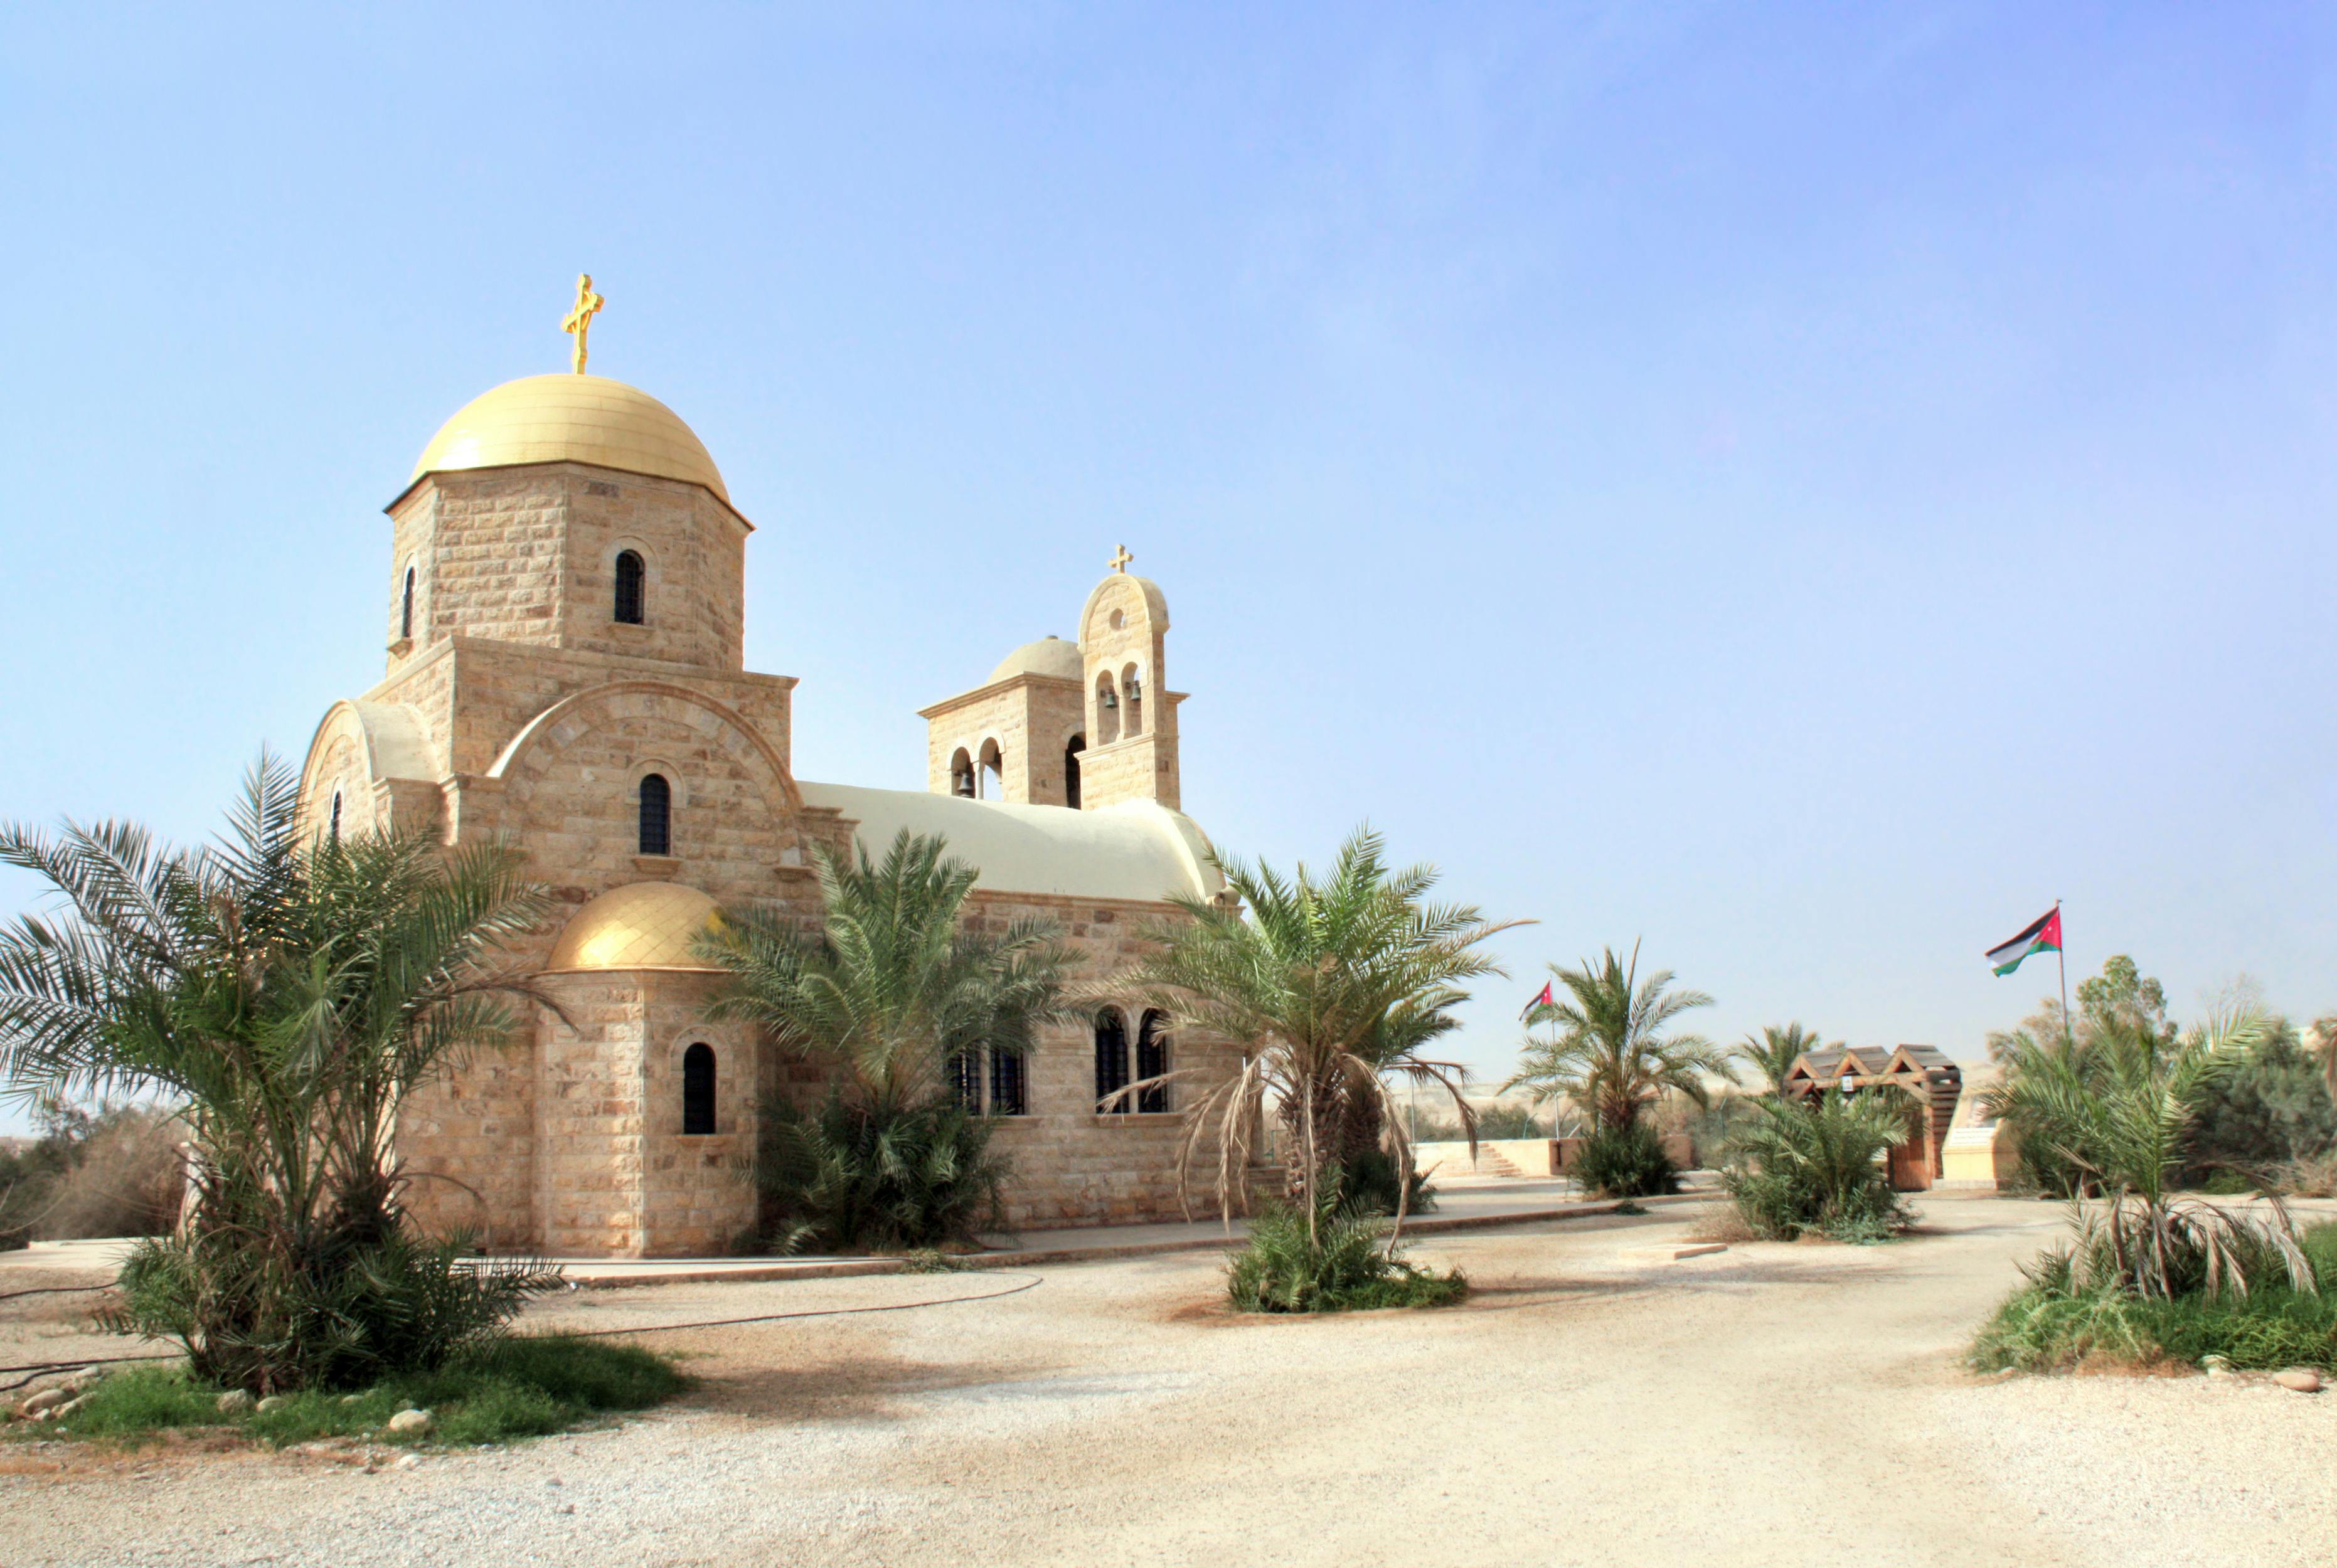 Tagestour durch die Taufstätte in Bethanien und As-Salt City von Amman